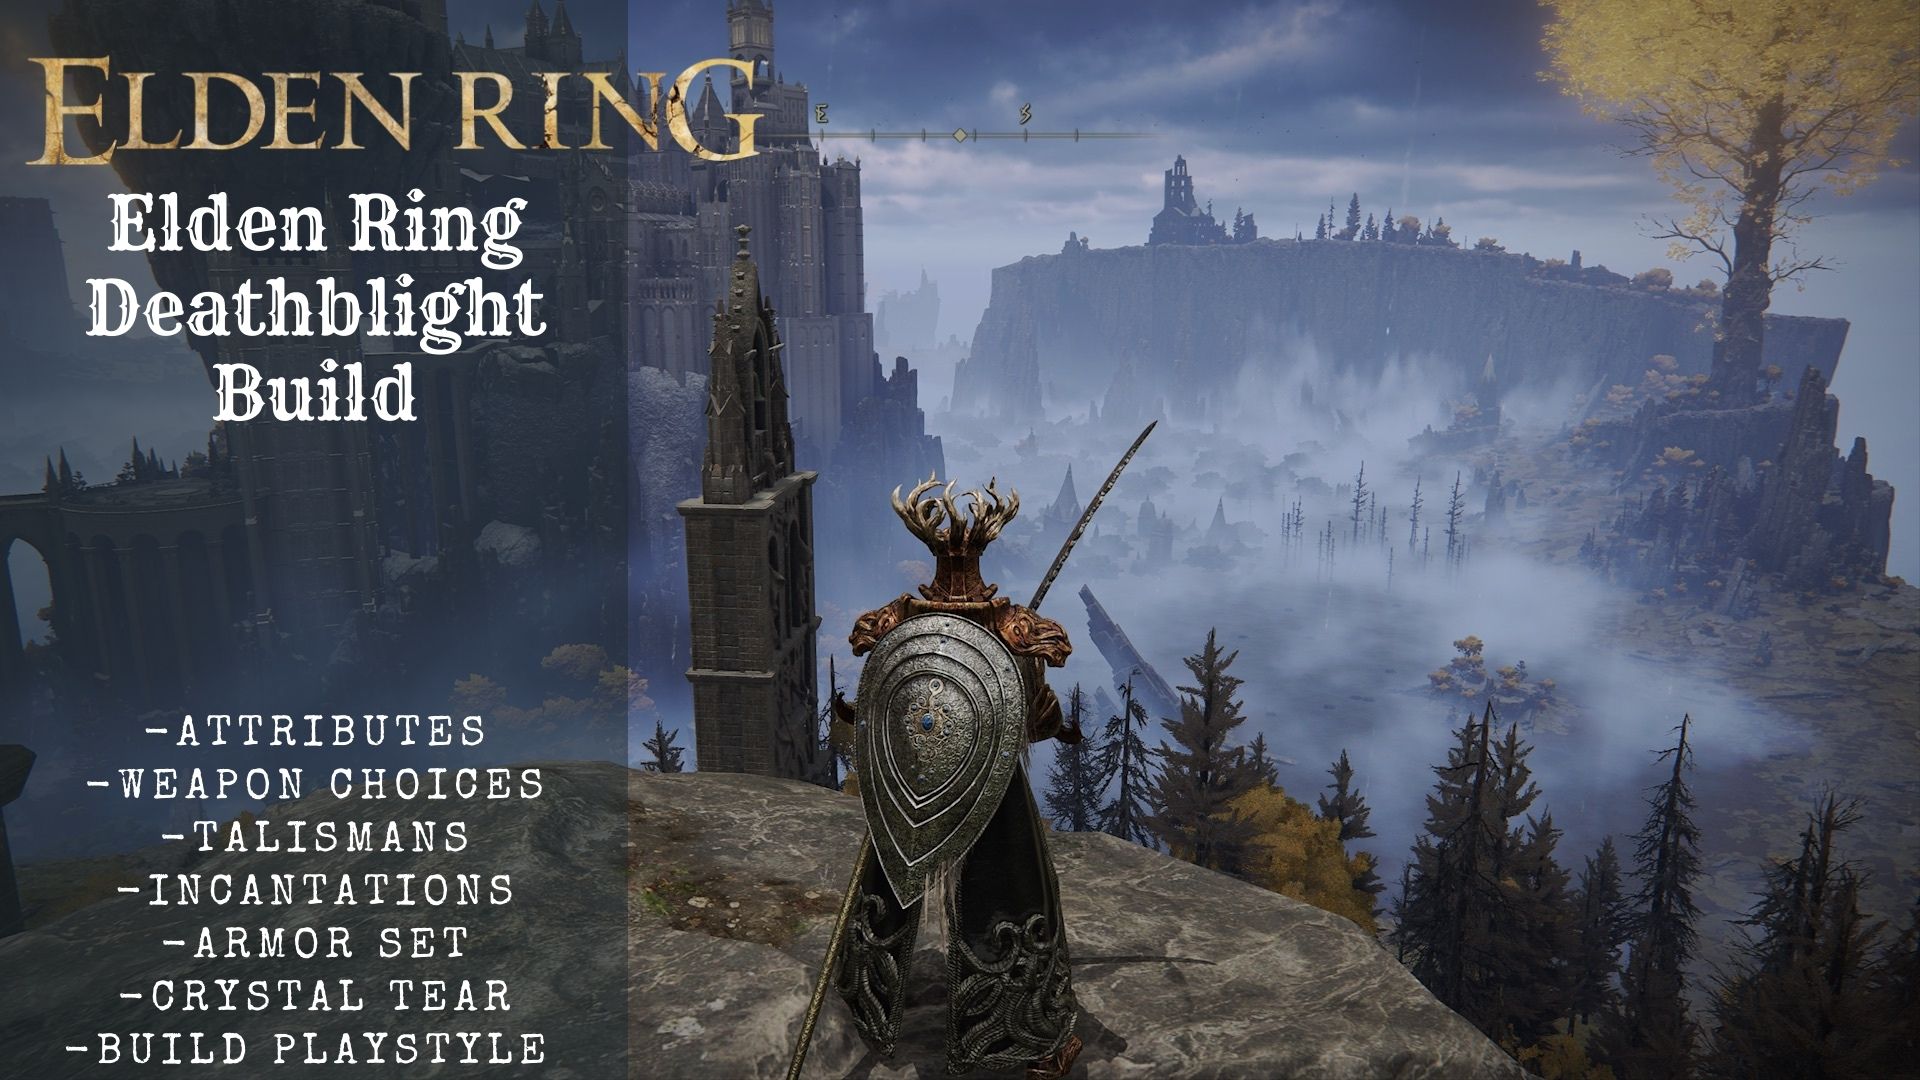 Elden Ring Deathblight Build Guide